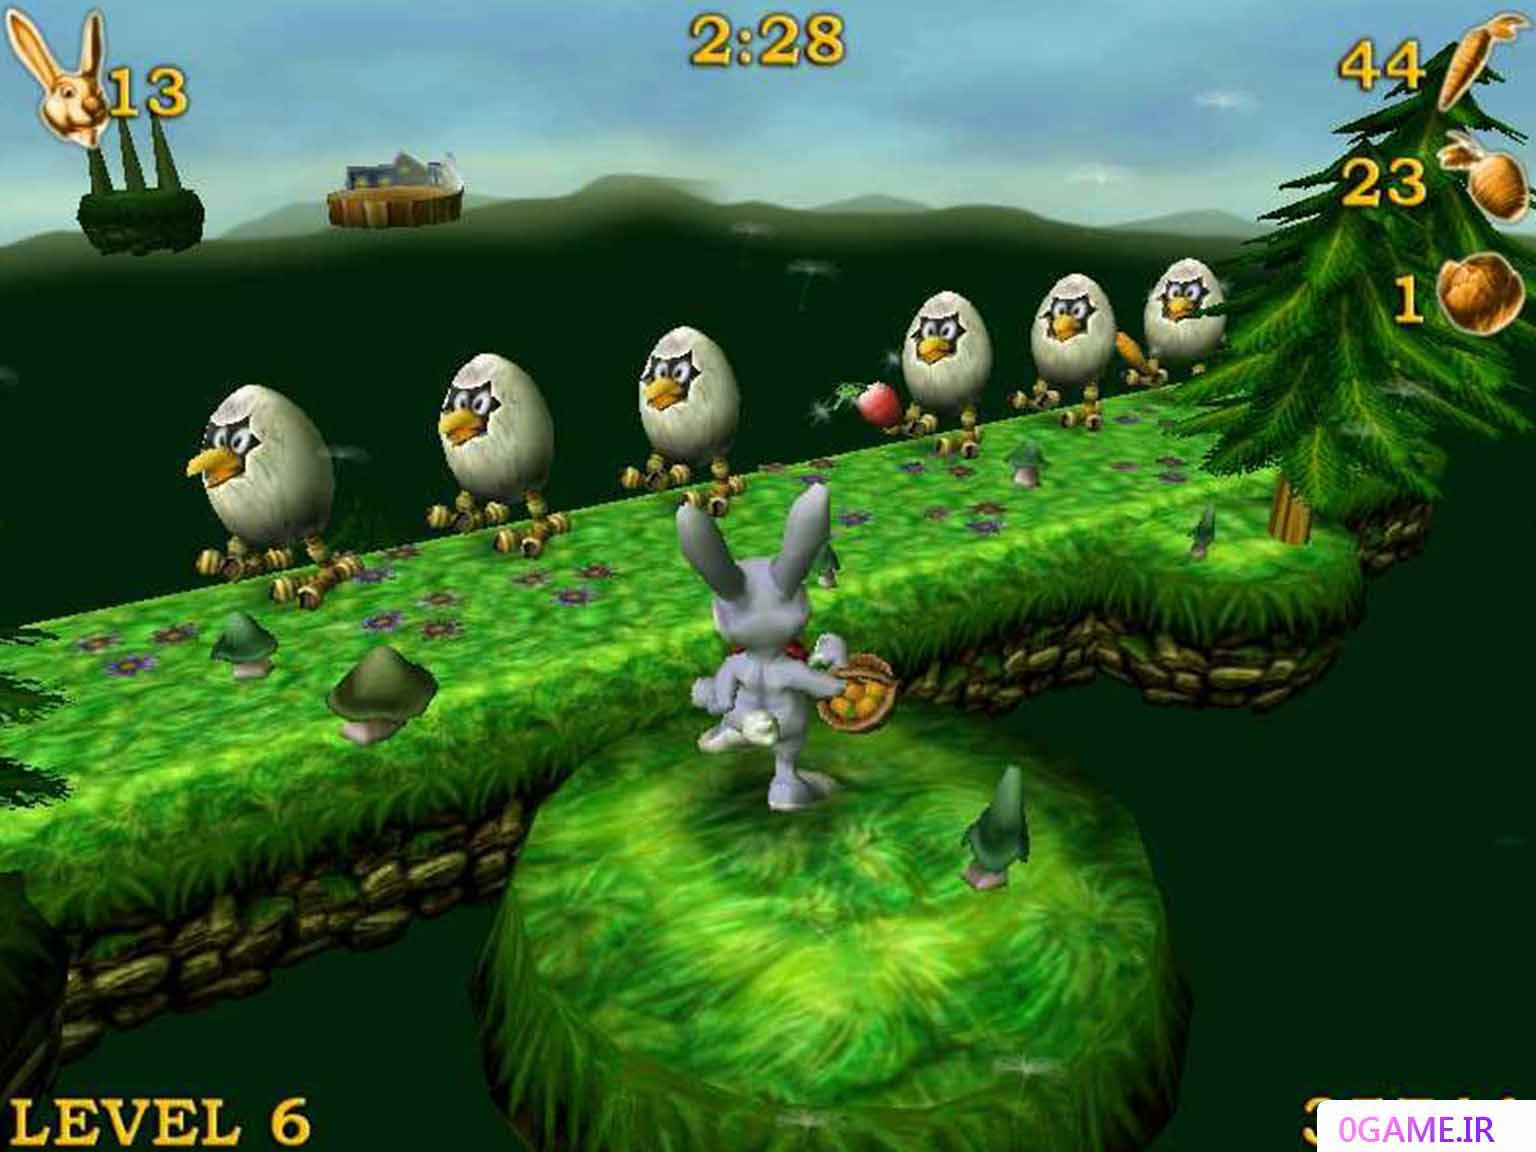 دانلود بازی دردسرهای خرگوش روسو (Rosso Rabbit in Trouble) نسخه کامل برای کامپیوتر